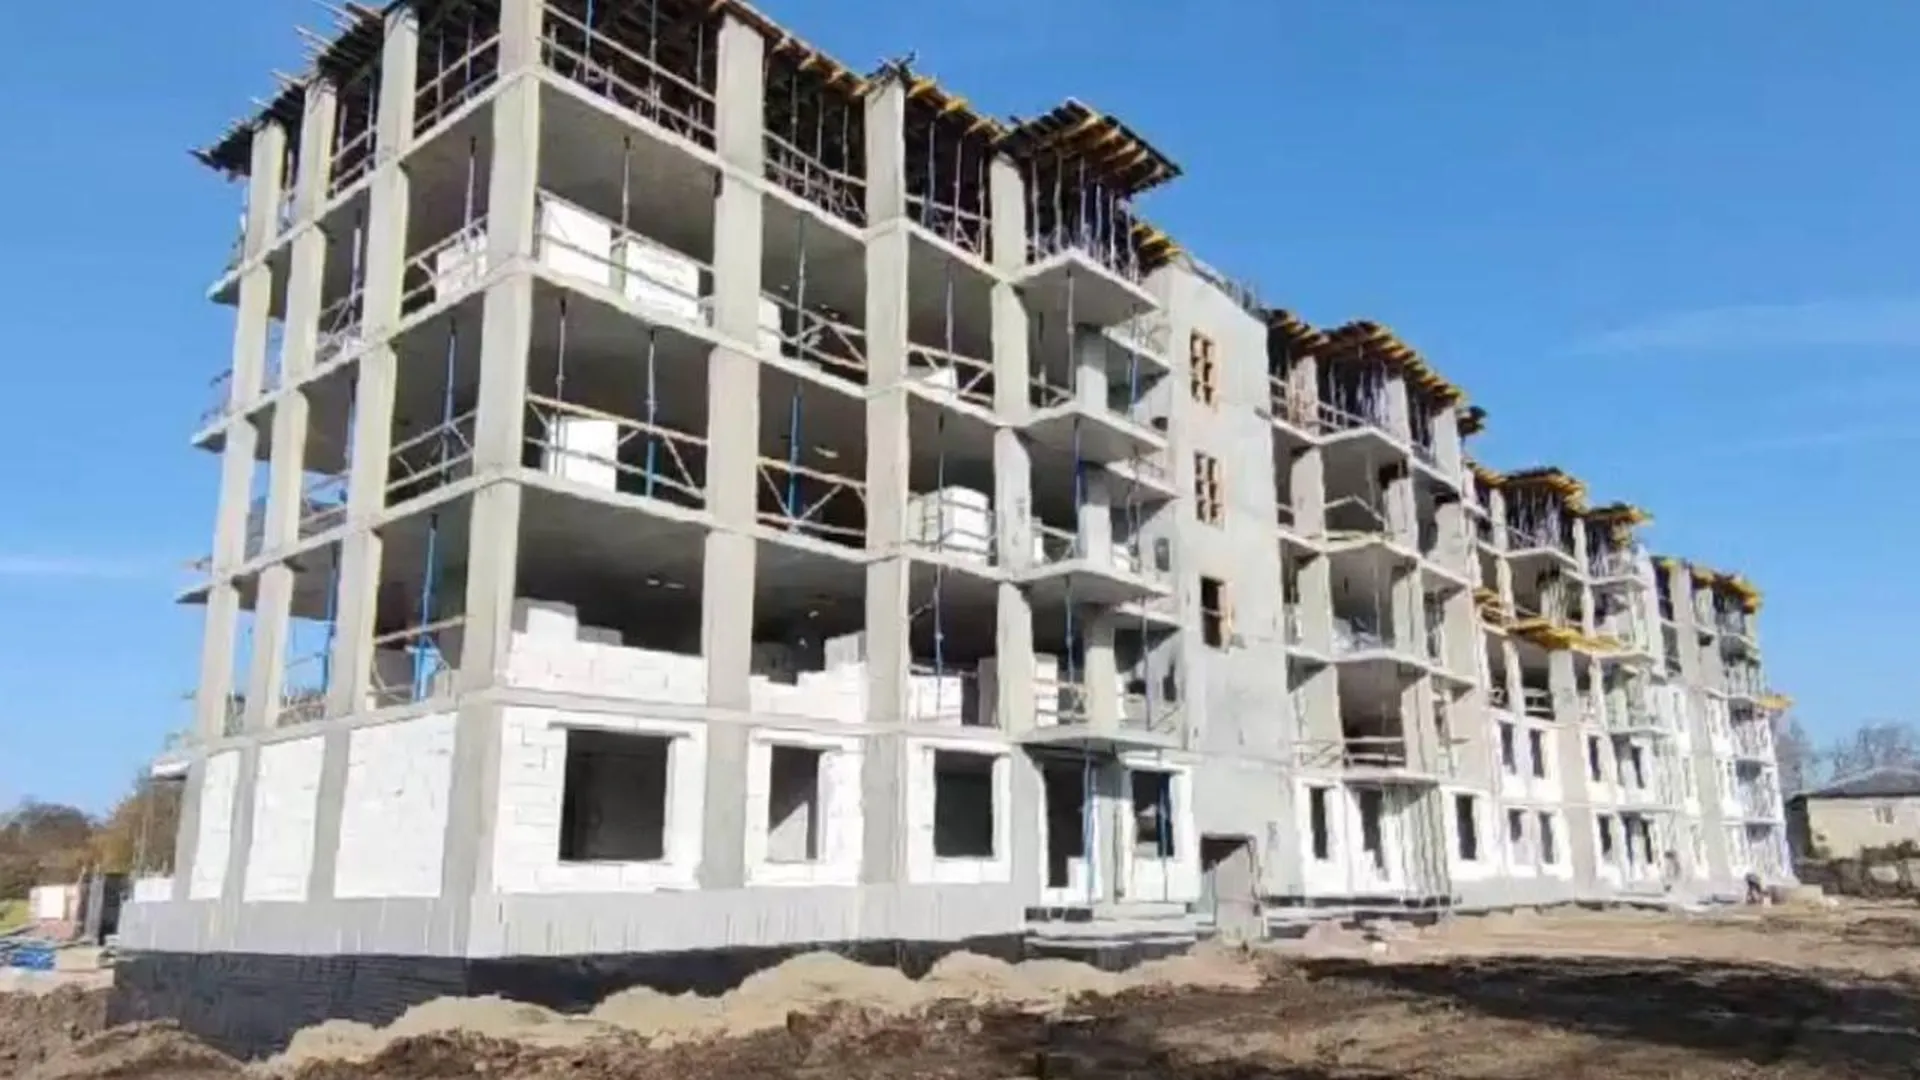 Строительство жилого дома для переселенцев из аварийного жилья продолжается в подмосковной Шатуре